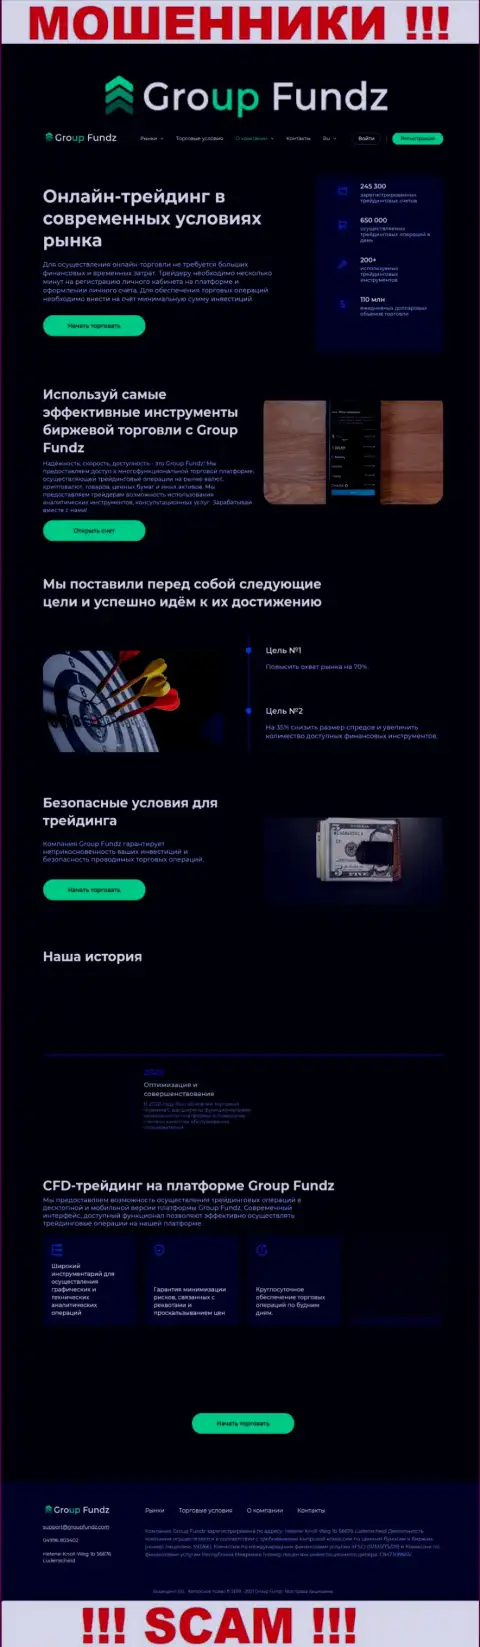 Скрин официального web-сайта GroupFundz - ГруппФондз Ком